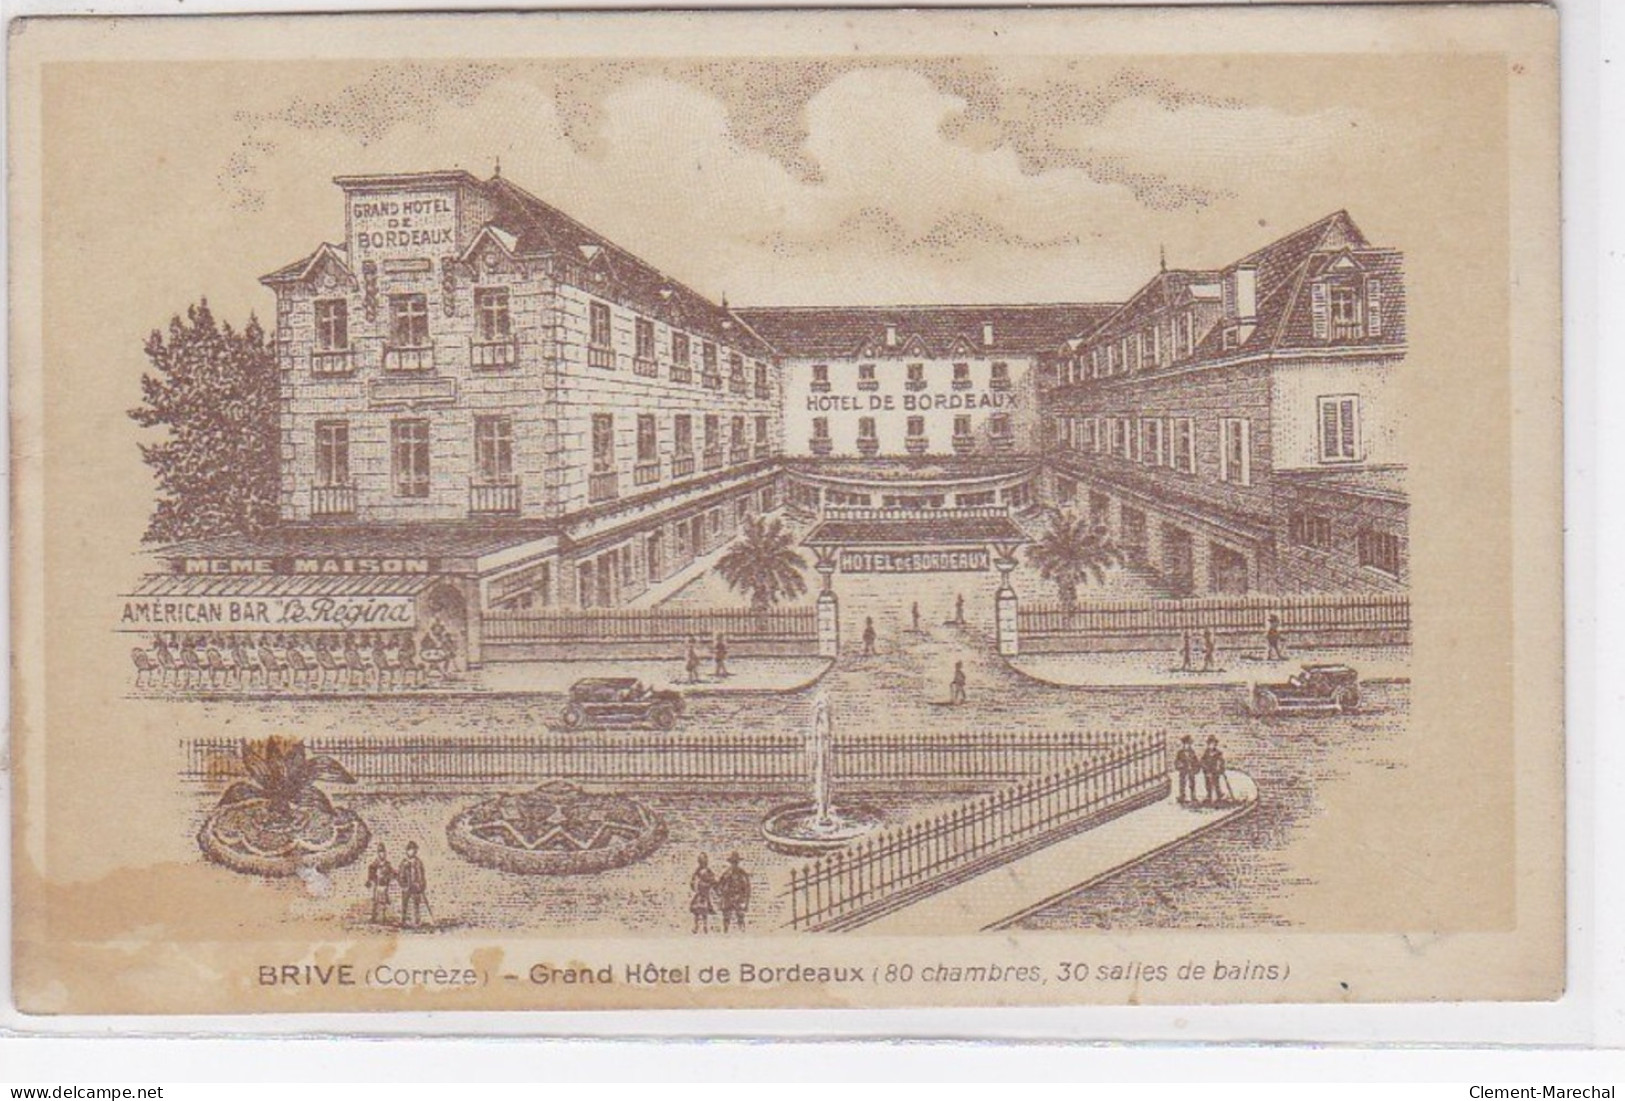 BRIVE : Carte Postale Publicitaire Pour Le Grand Hotel De Bordeaux - état (traces) - Brive La Gaillarde